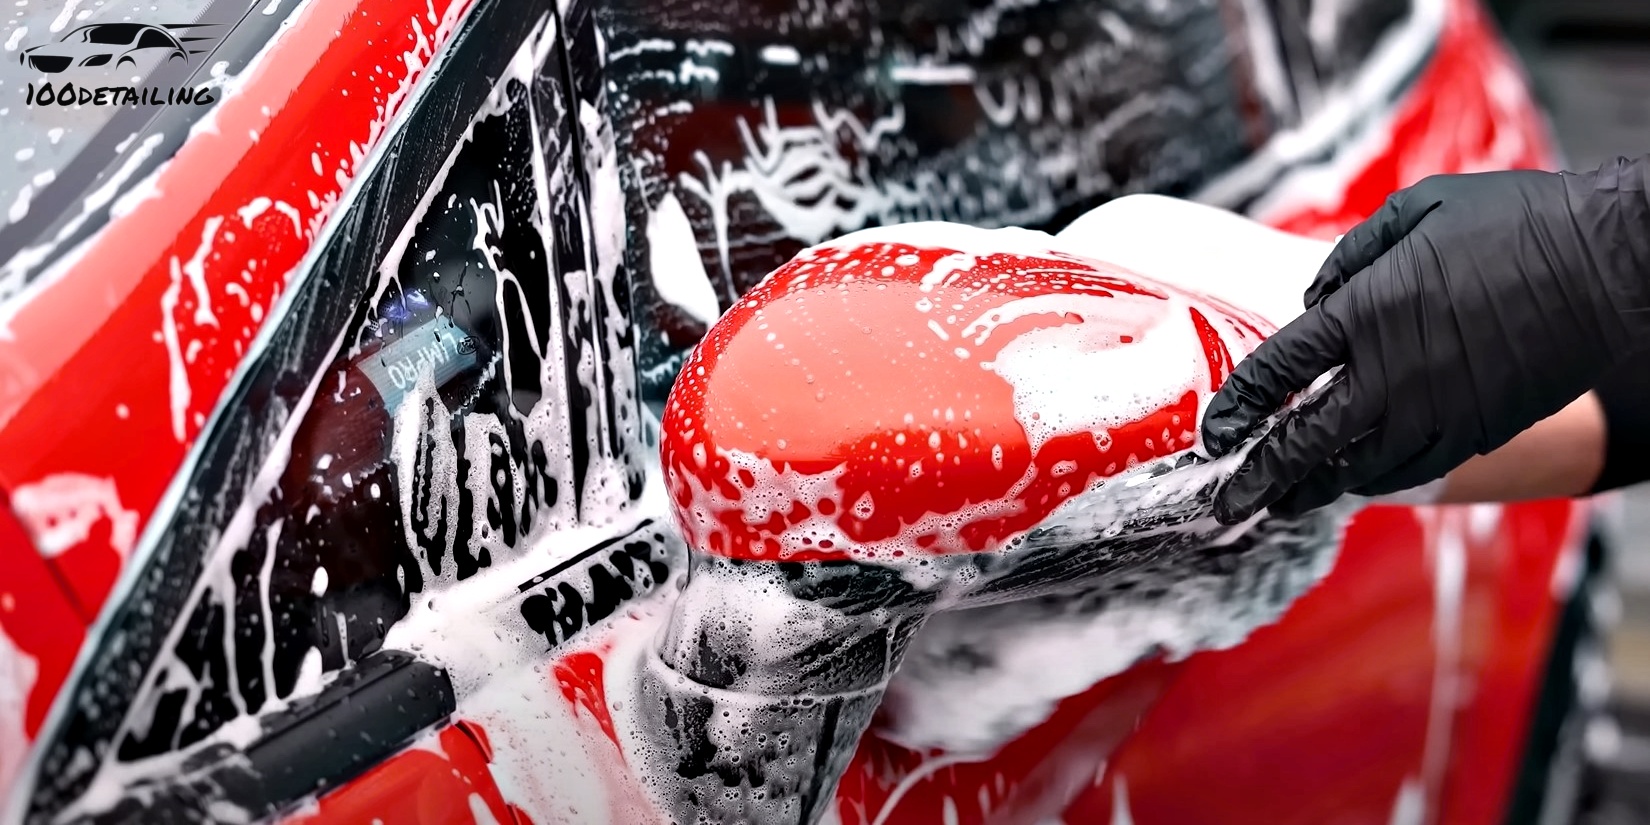 mytí auta pomoci mycí rukavice a autosamponu fresso